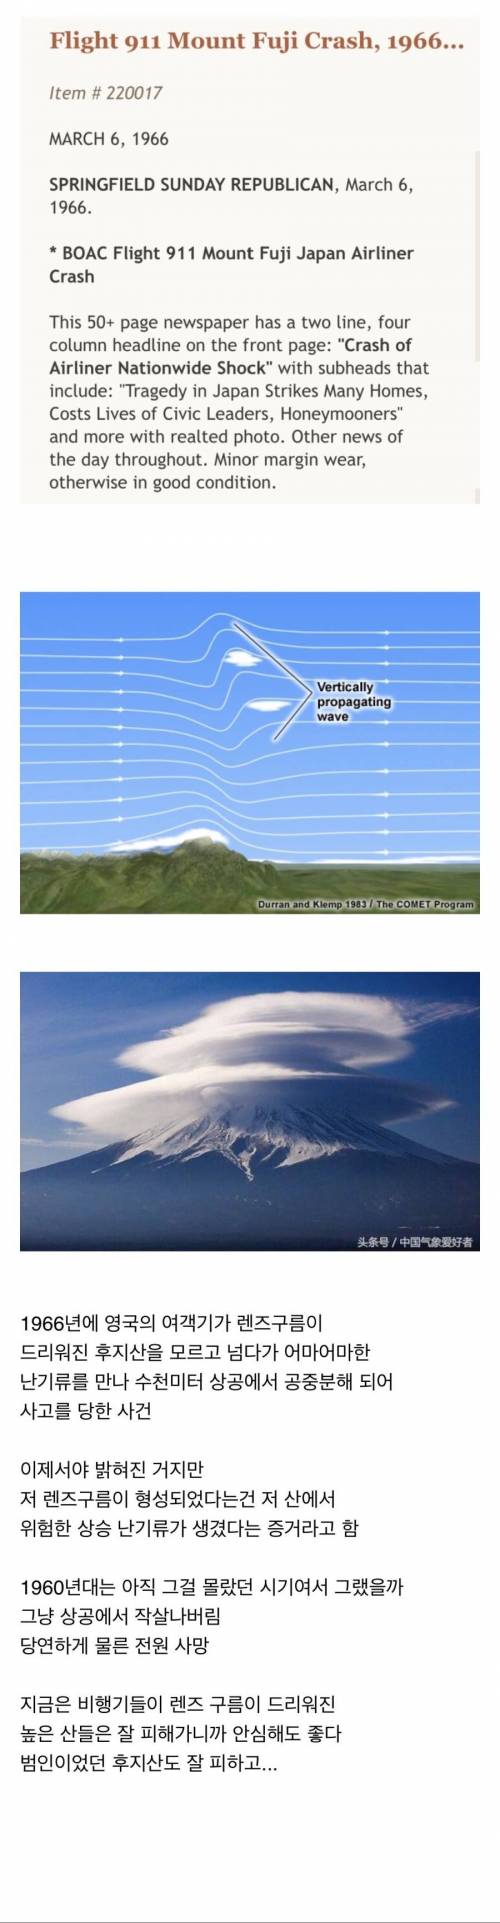 렌즈구름의 위험성.jpg